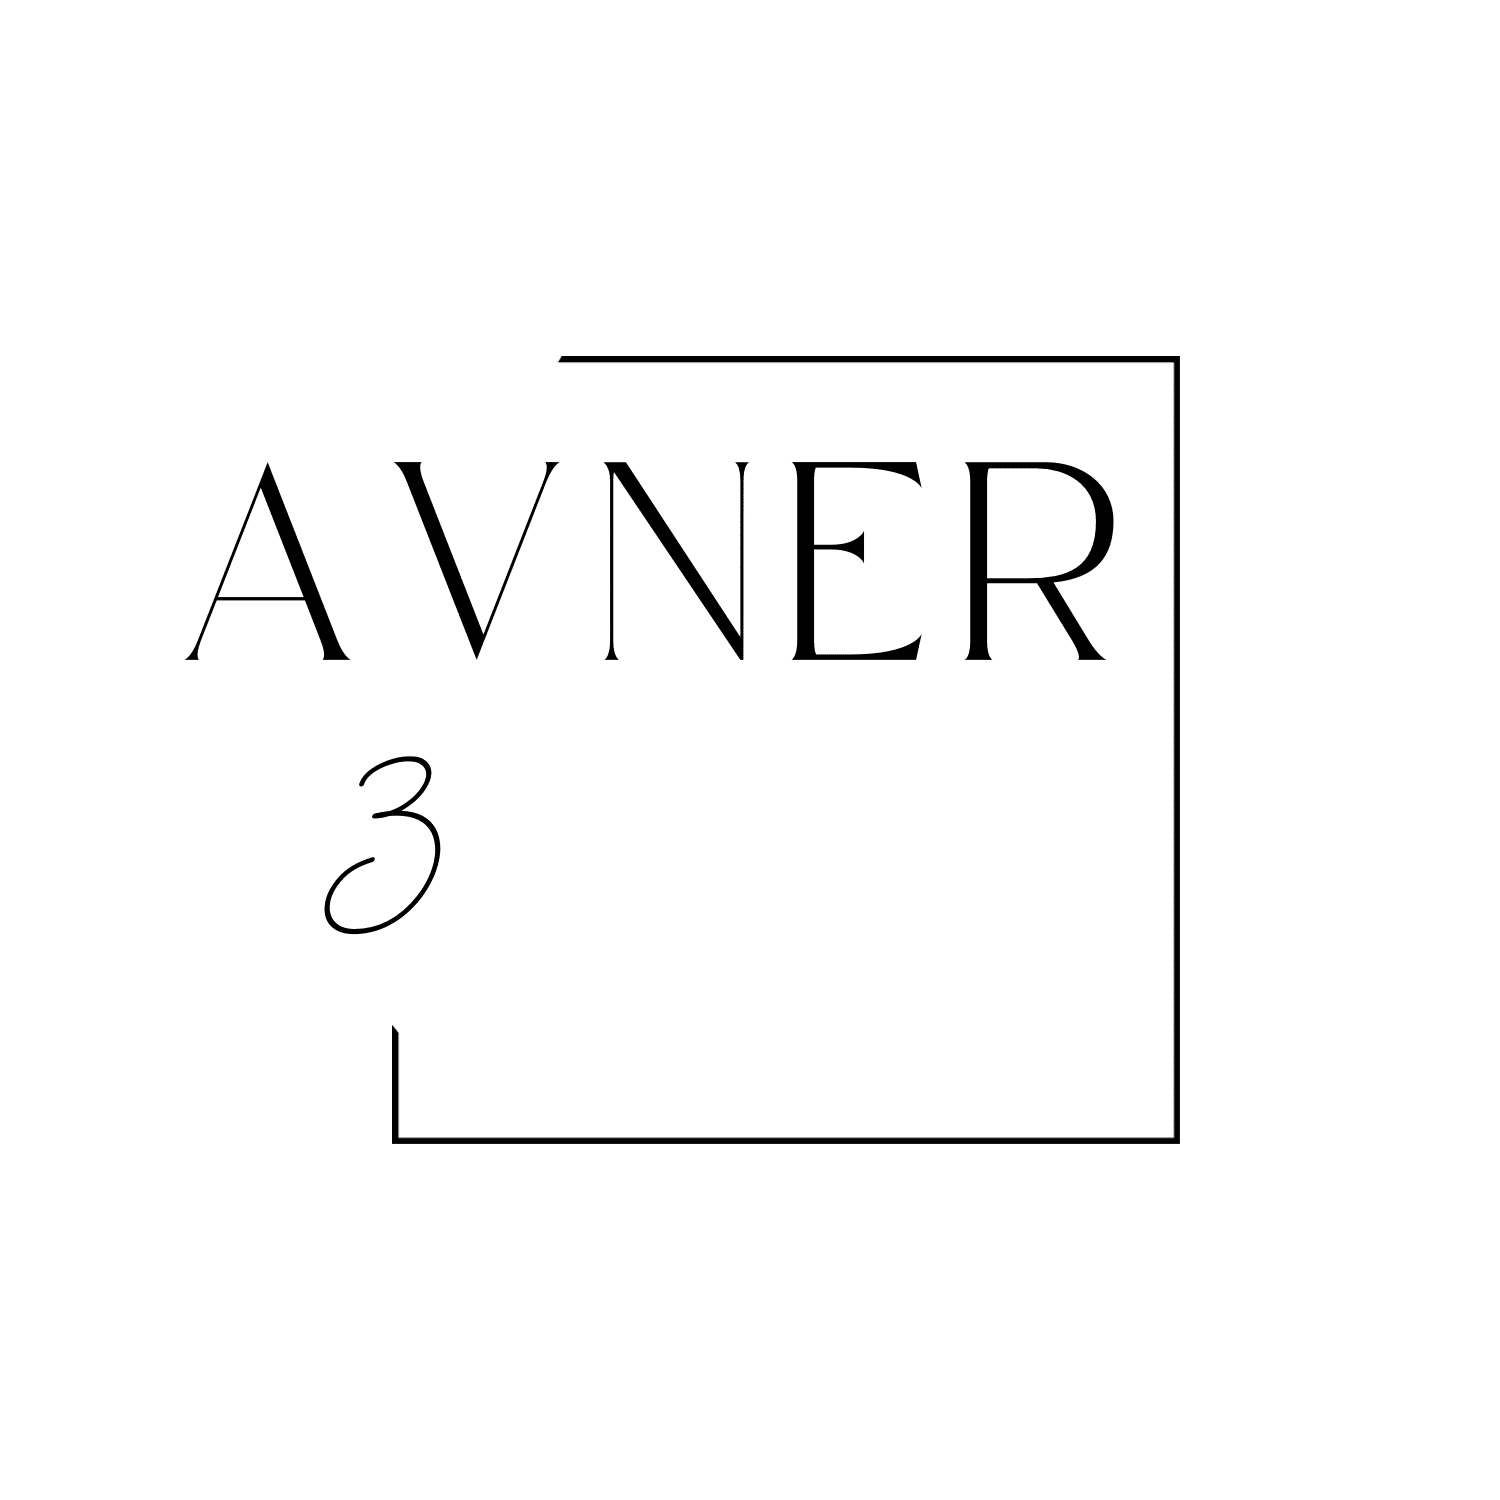 לוגו פרויקט אבנר 3